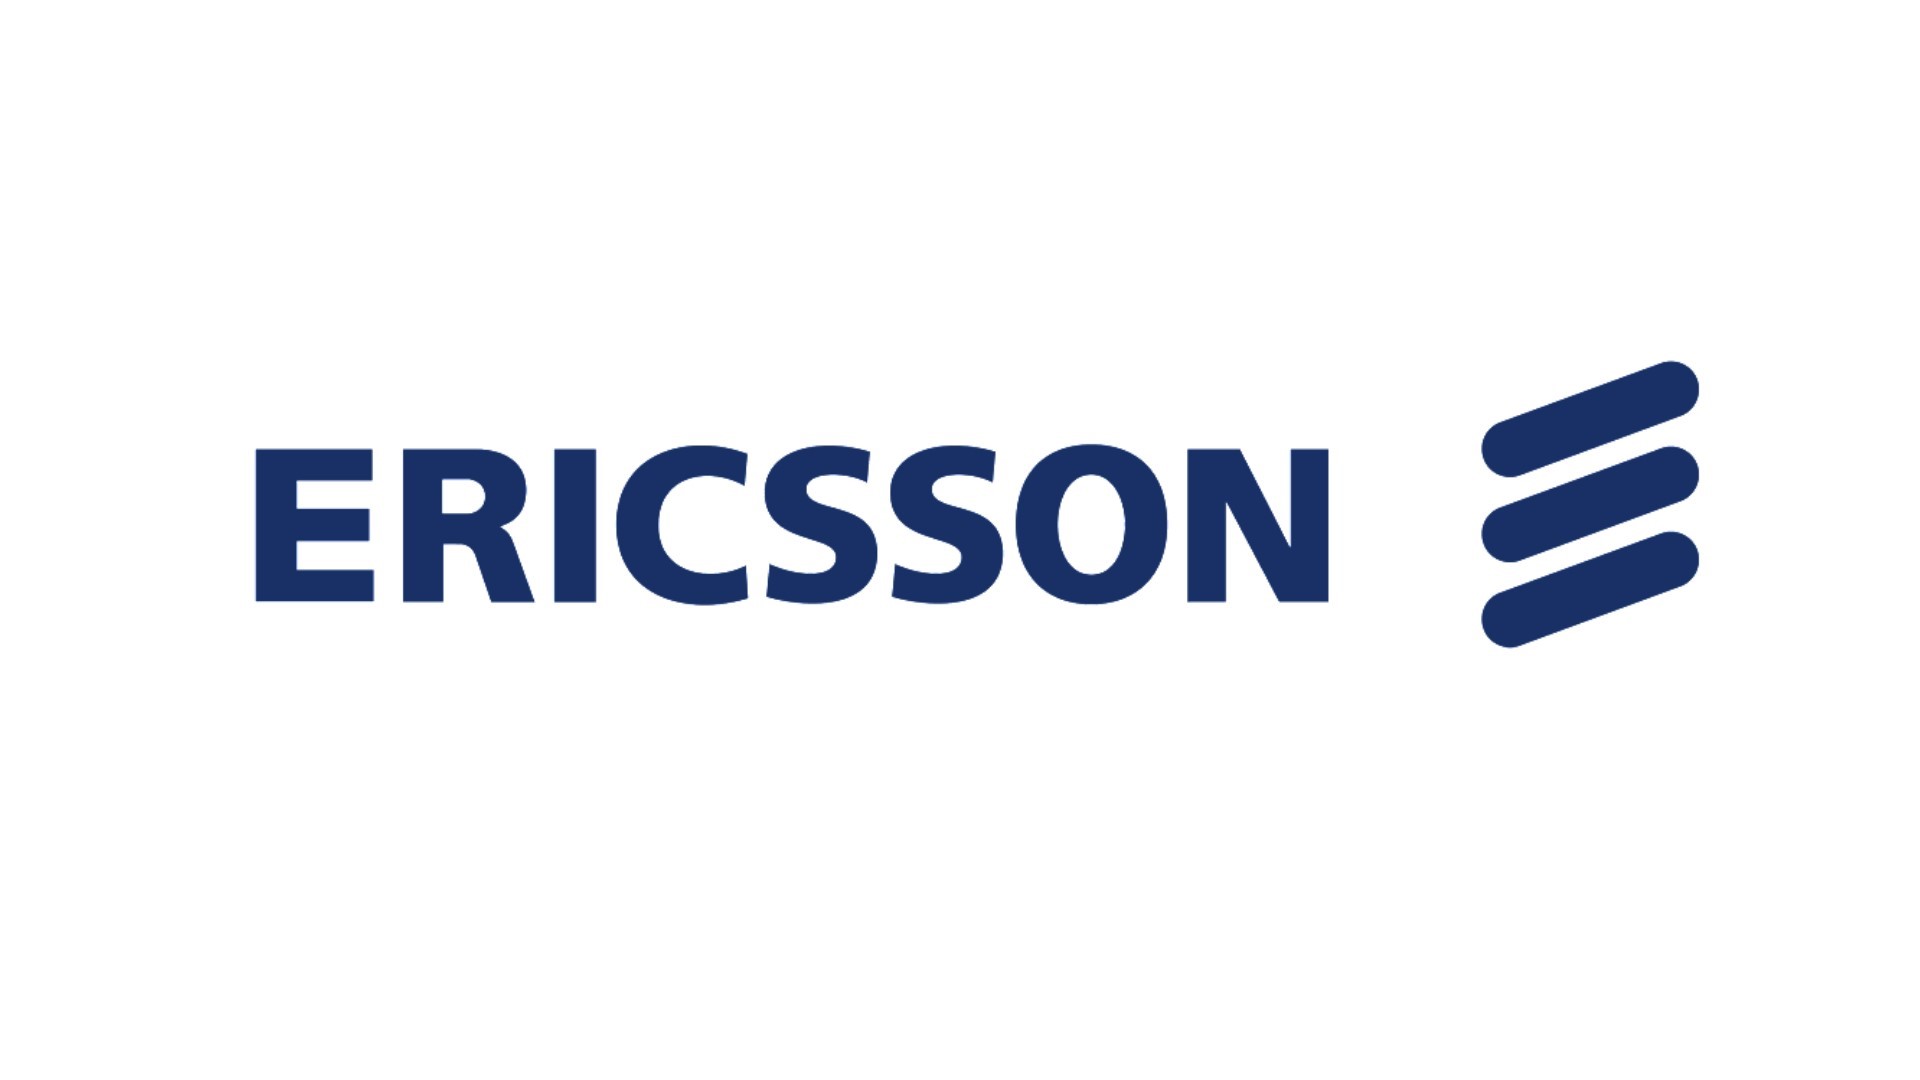 Ericsson ได้เซ็นสัญญาเป็นอุปกรณ์ในเครือข่าย 5G ของกรีนแลนด์